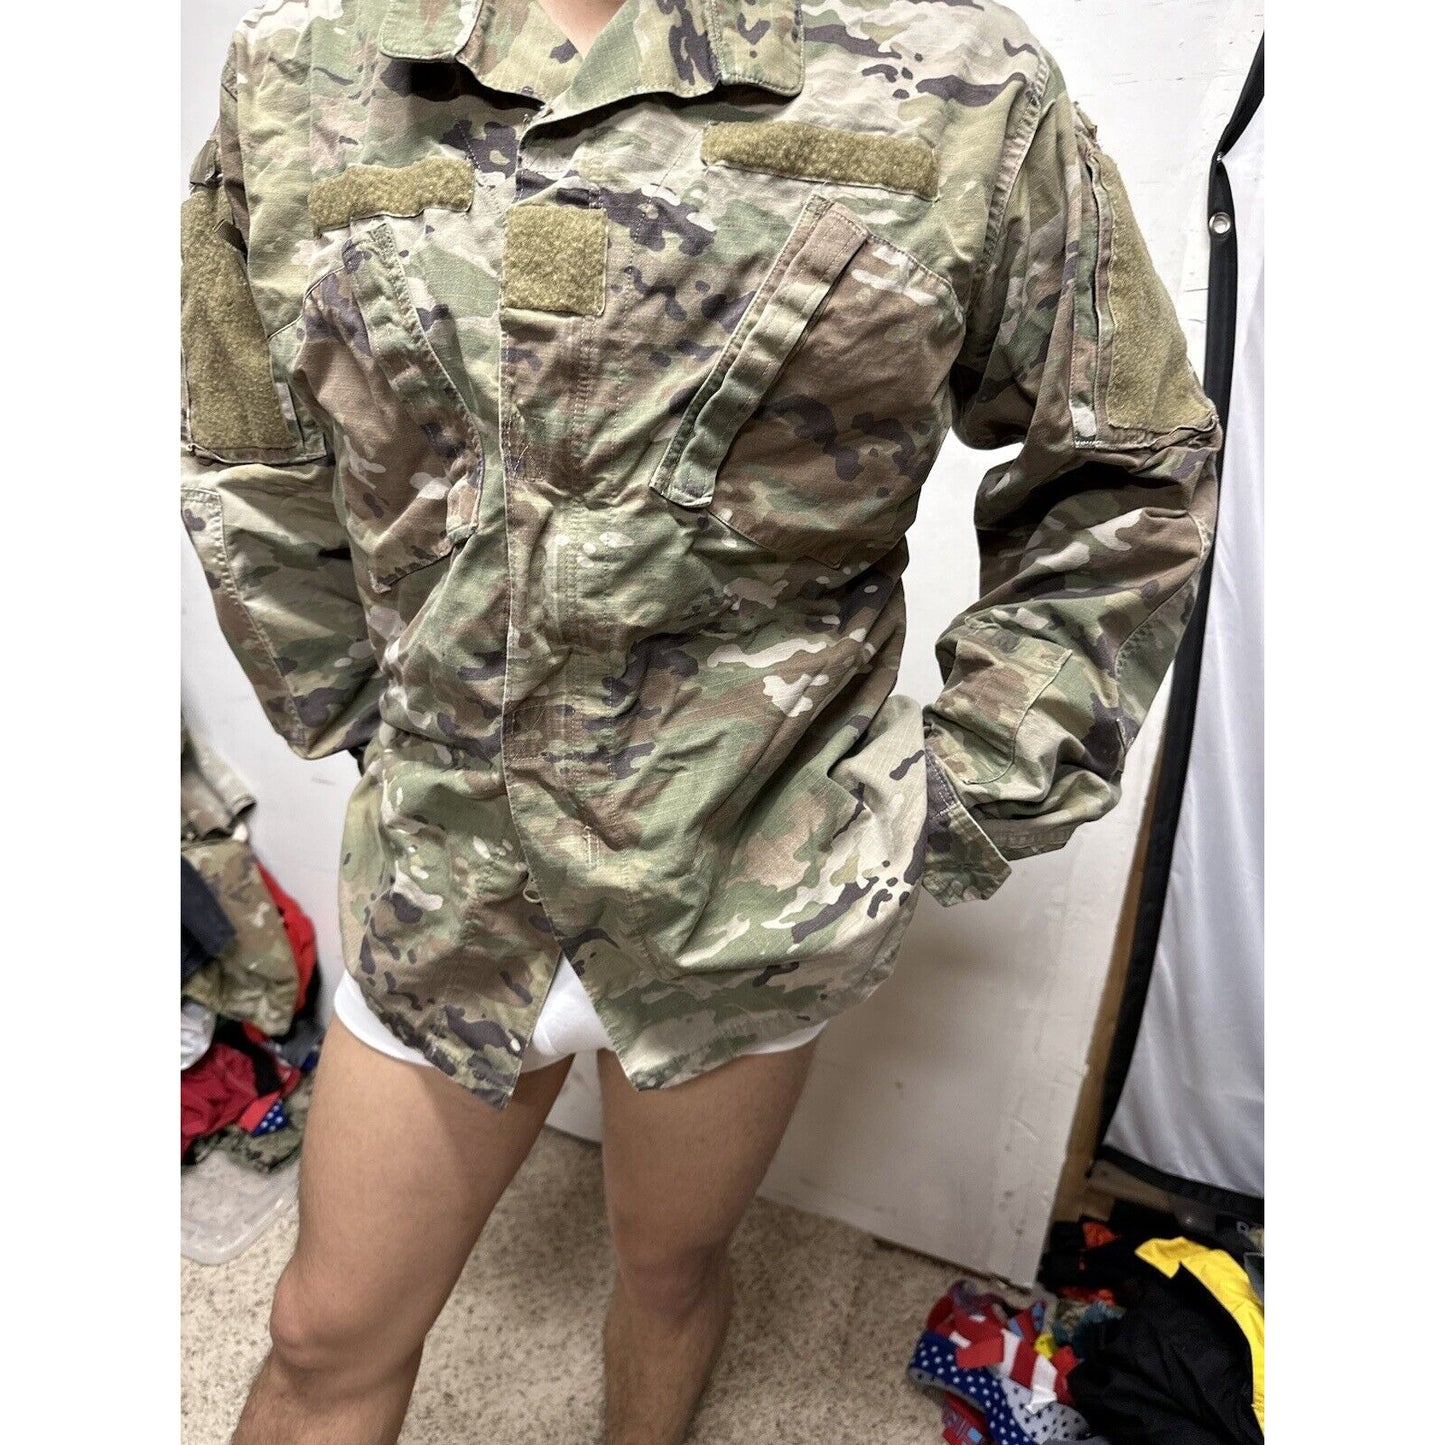 Men’s Ocp Army Combat Uniform Large Long Top Blouse Space Force